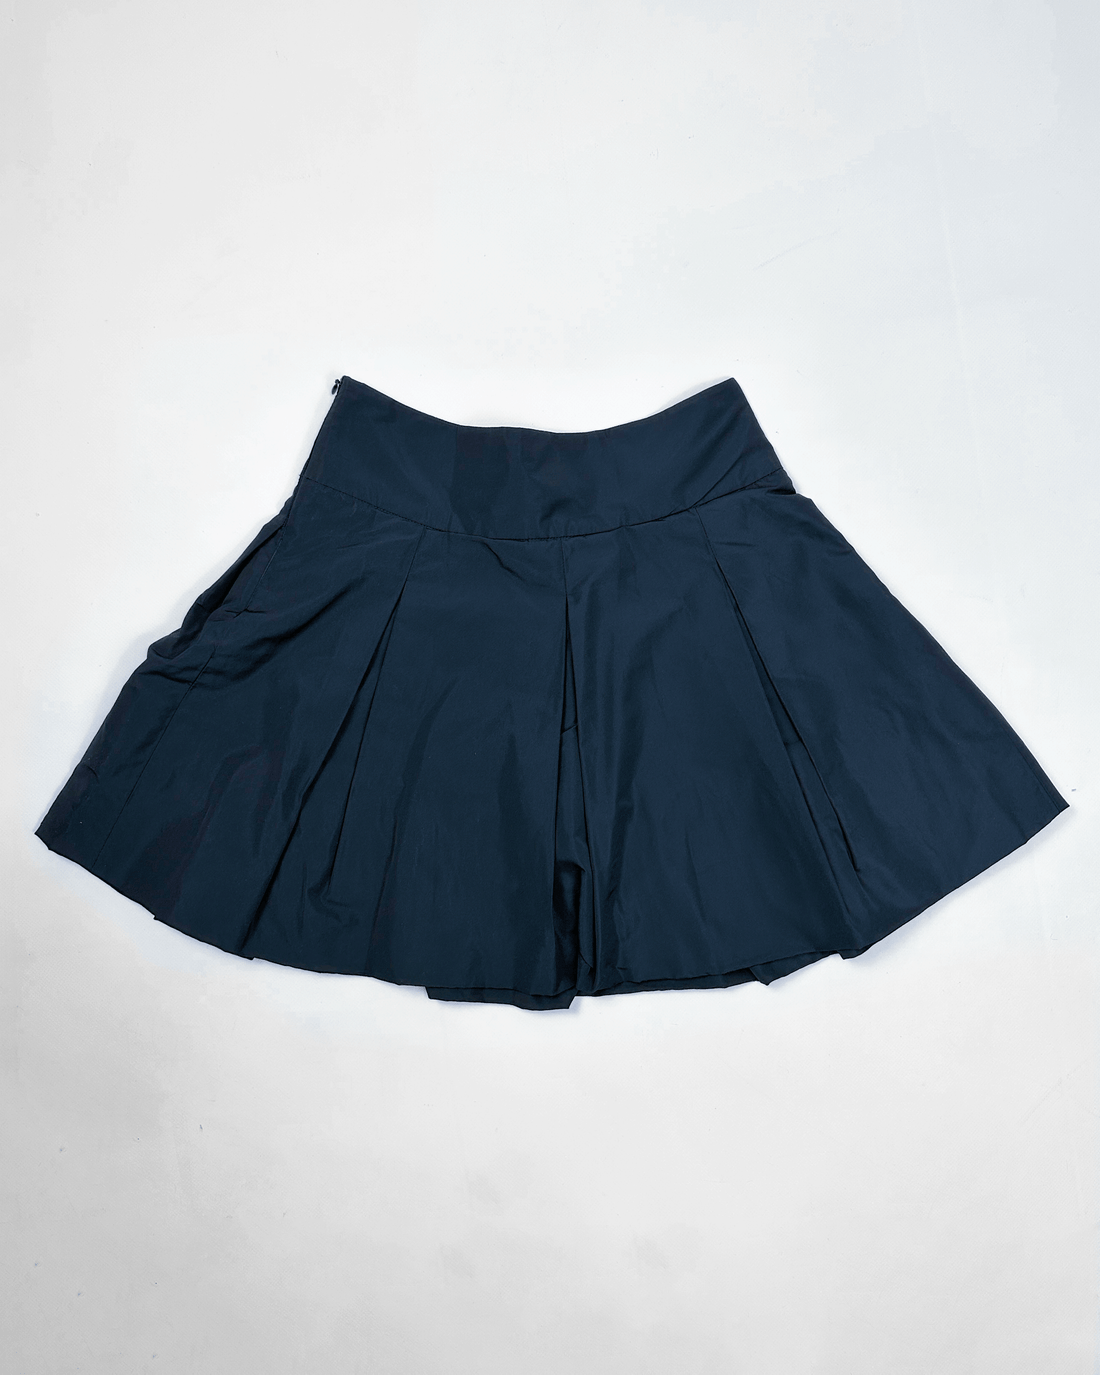 Miu Miu Navy Blue Pleated Mini Skirt 2000's